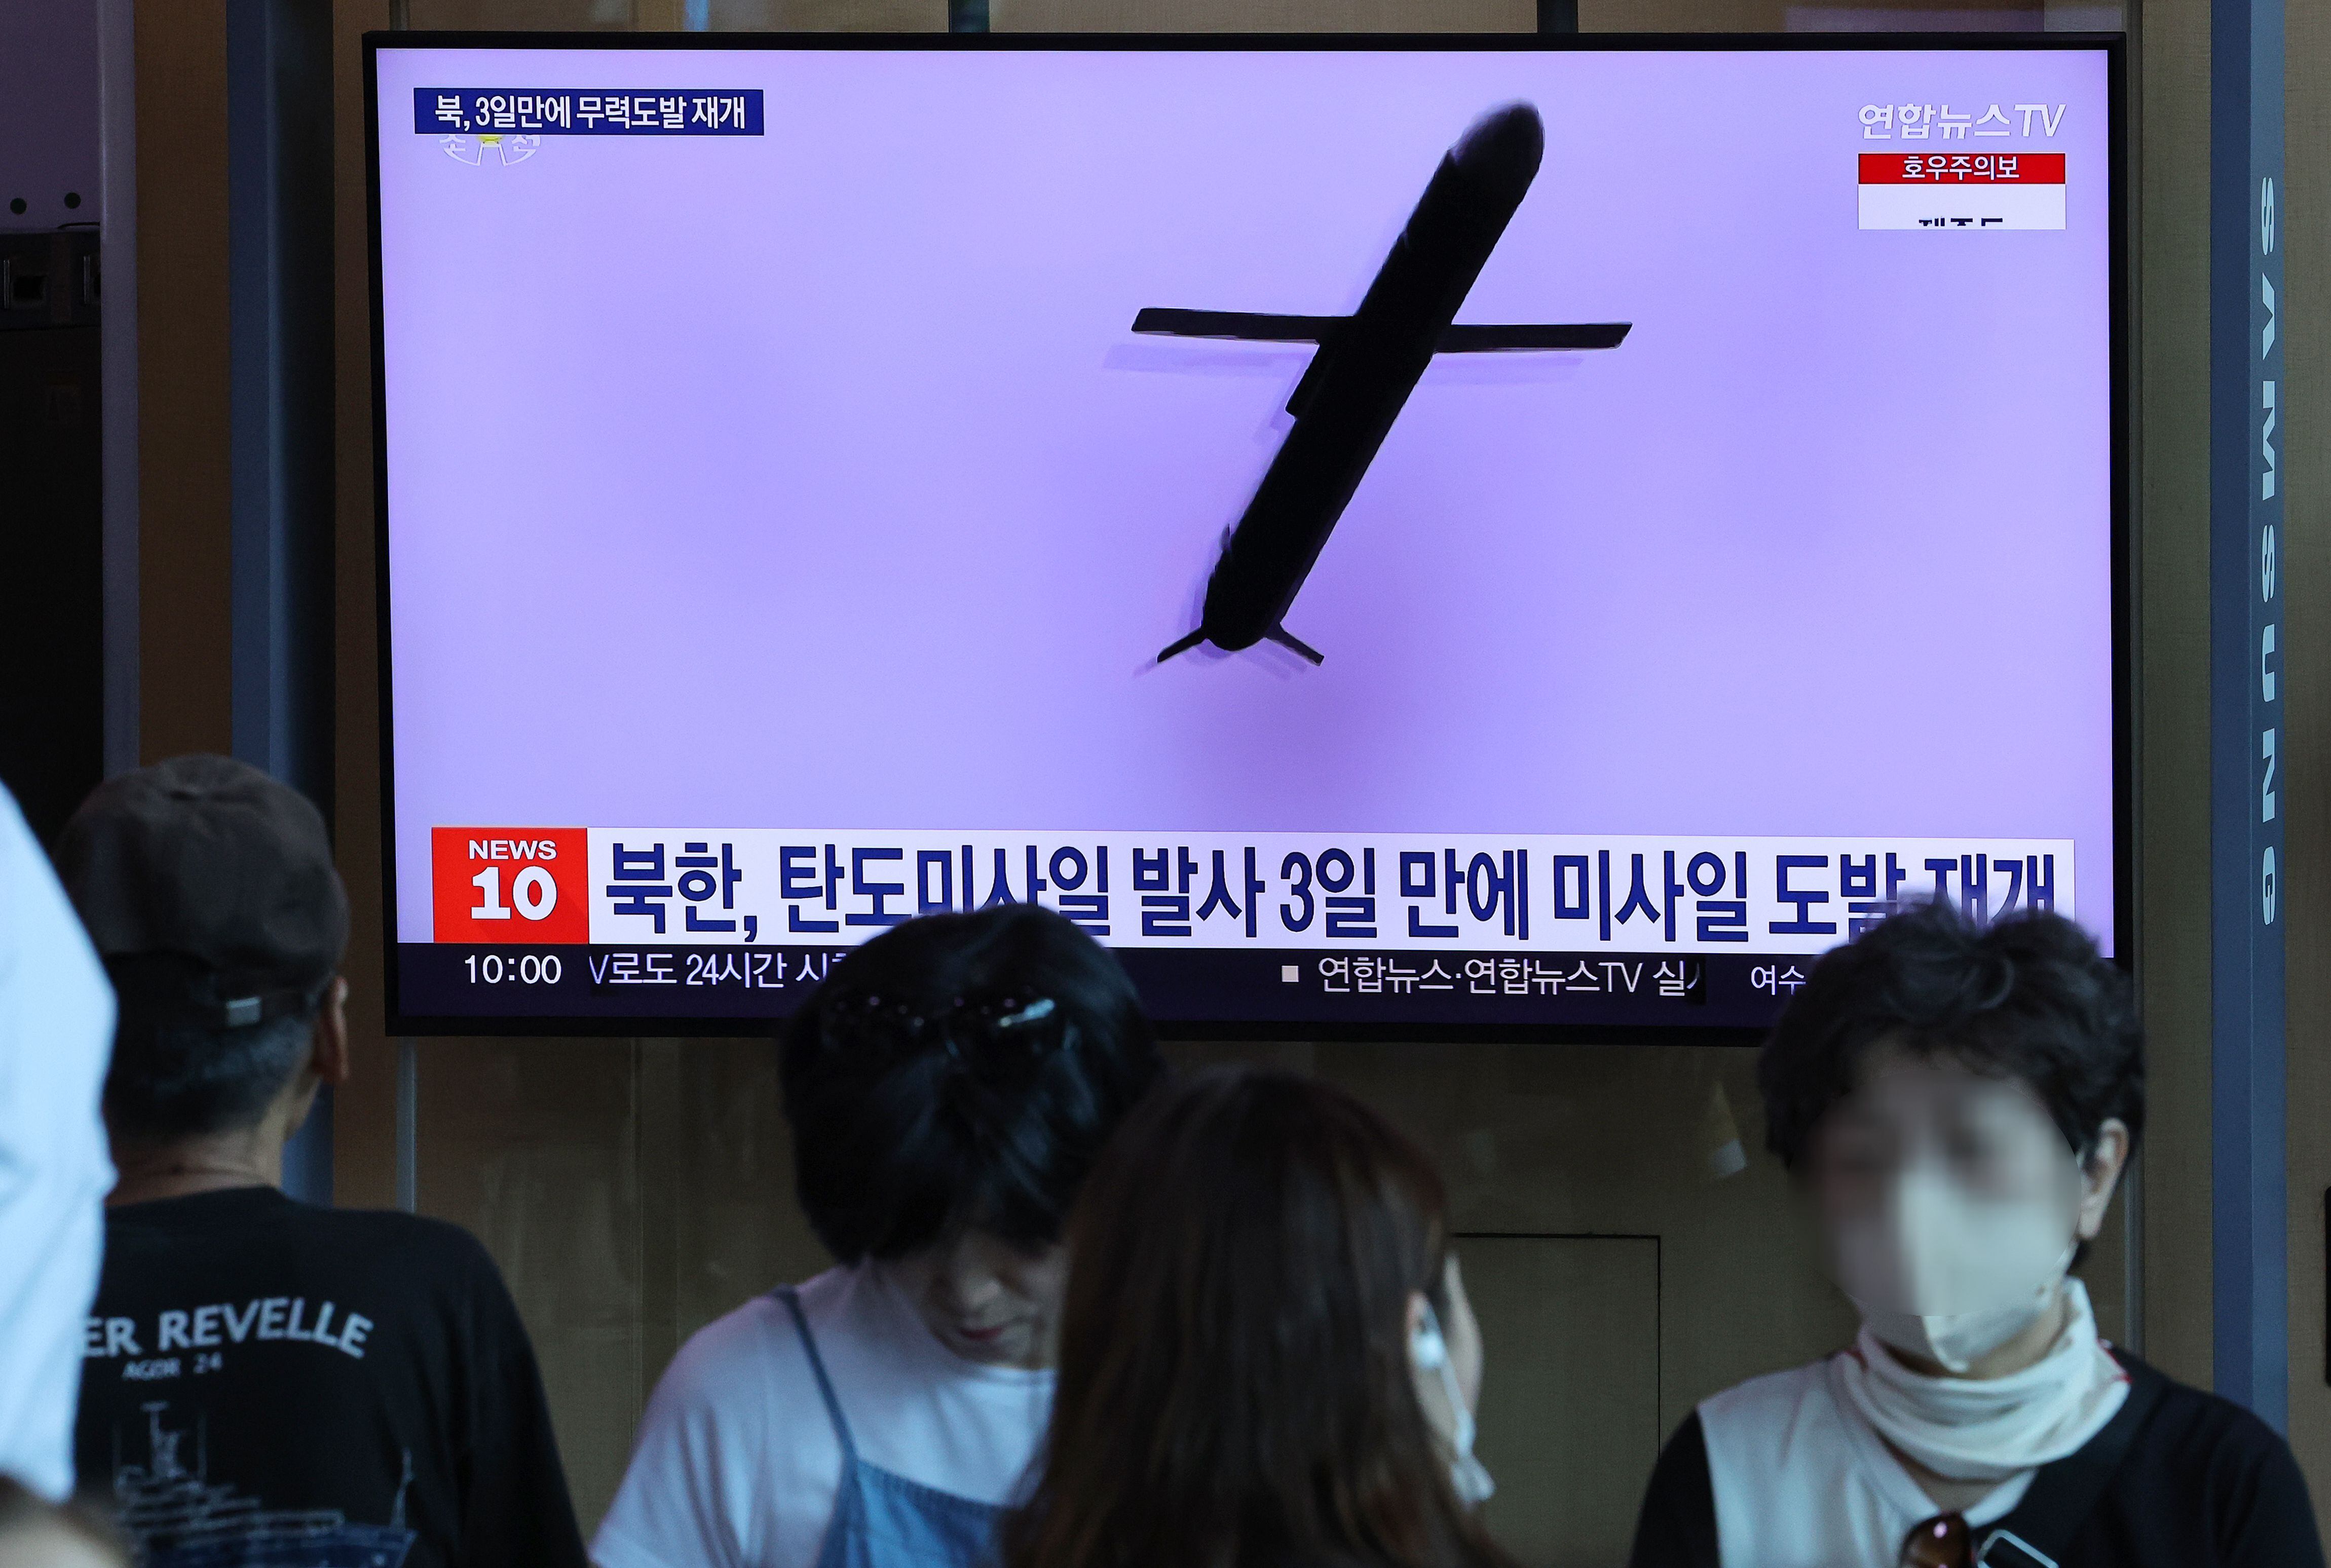  북한이 서해상으로 순항미사일을 발사한 지난 22일 오전 서울역 대합실에서 시민들이 관련 보도를 보고 있다. /연합뉴스